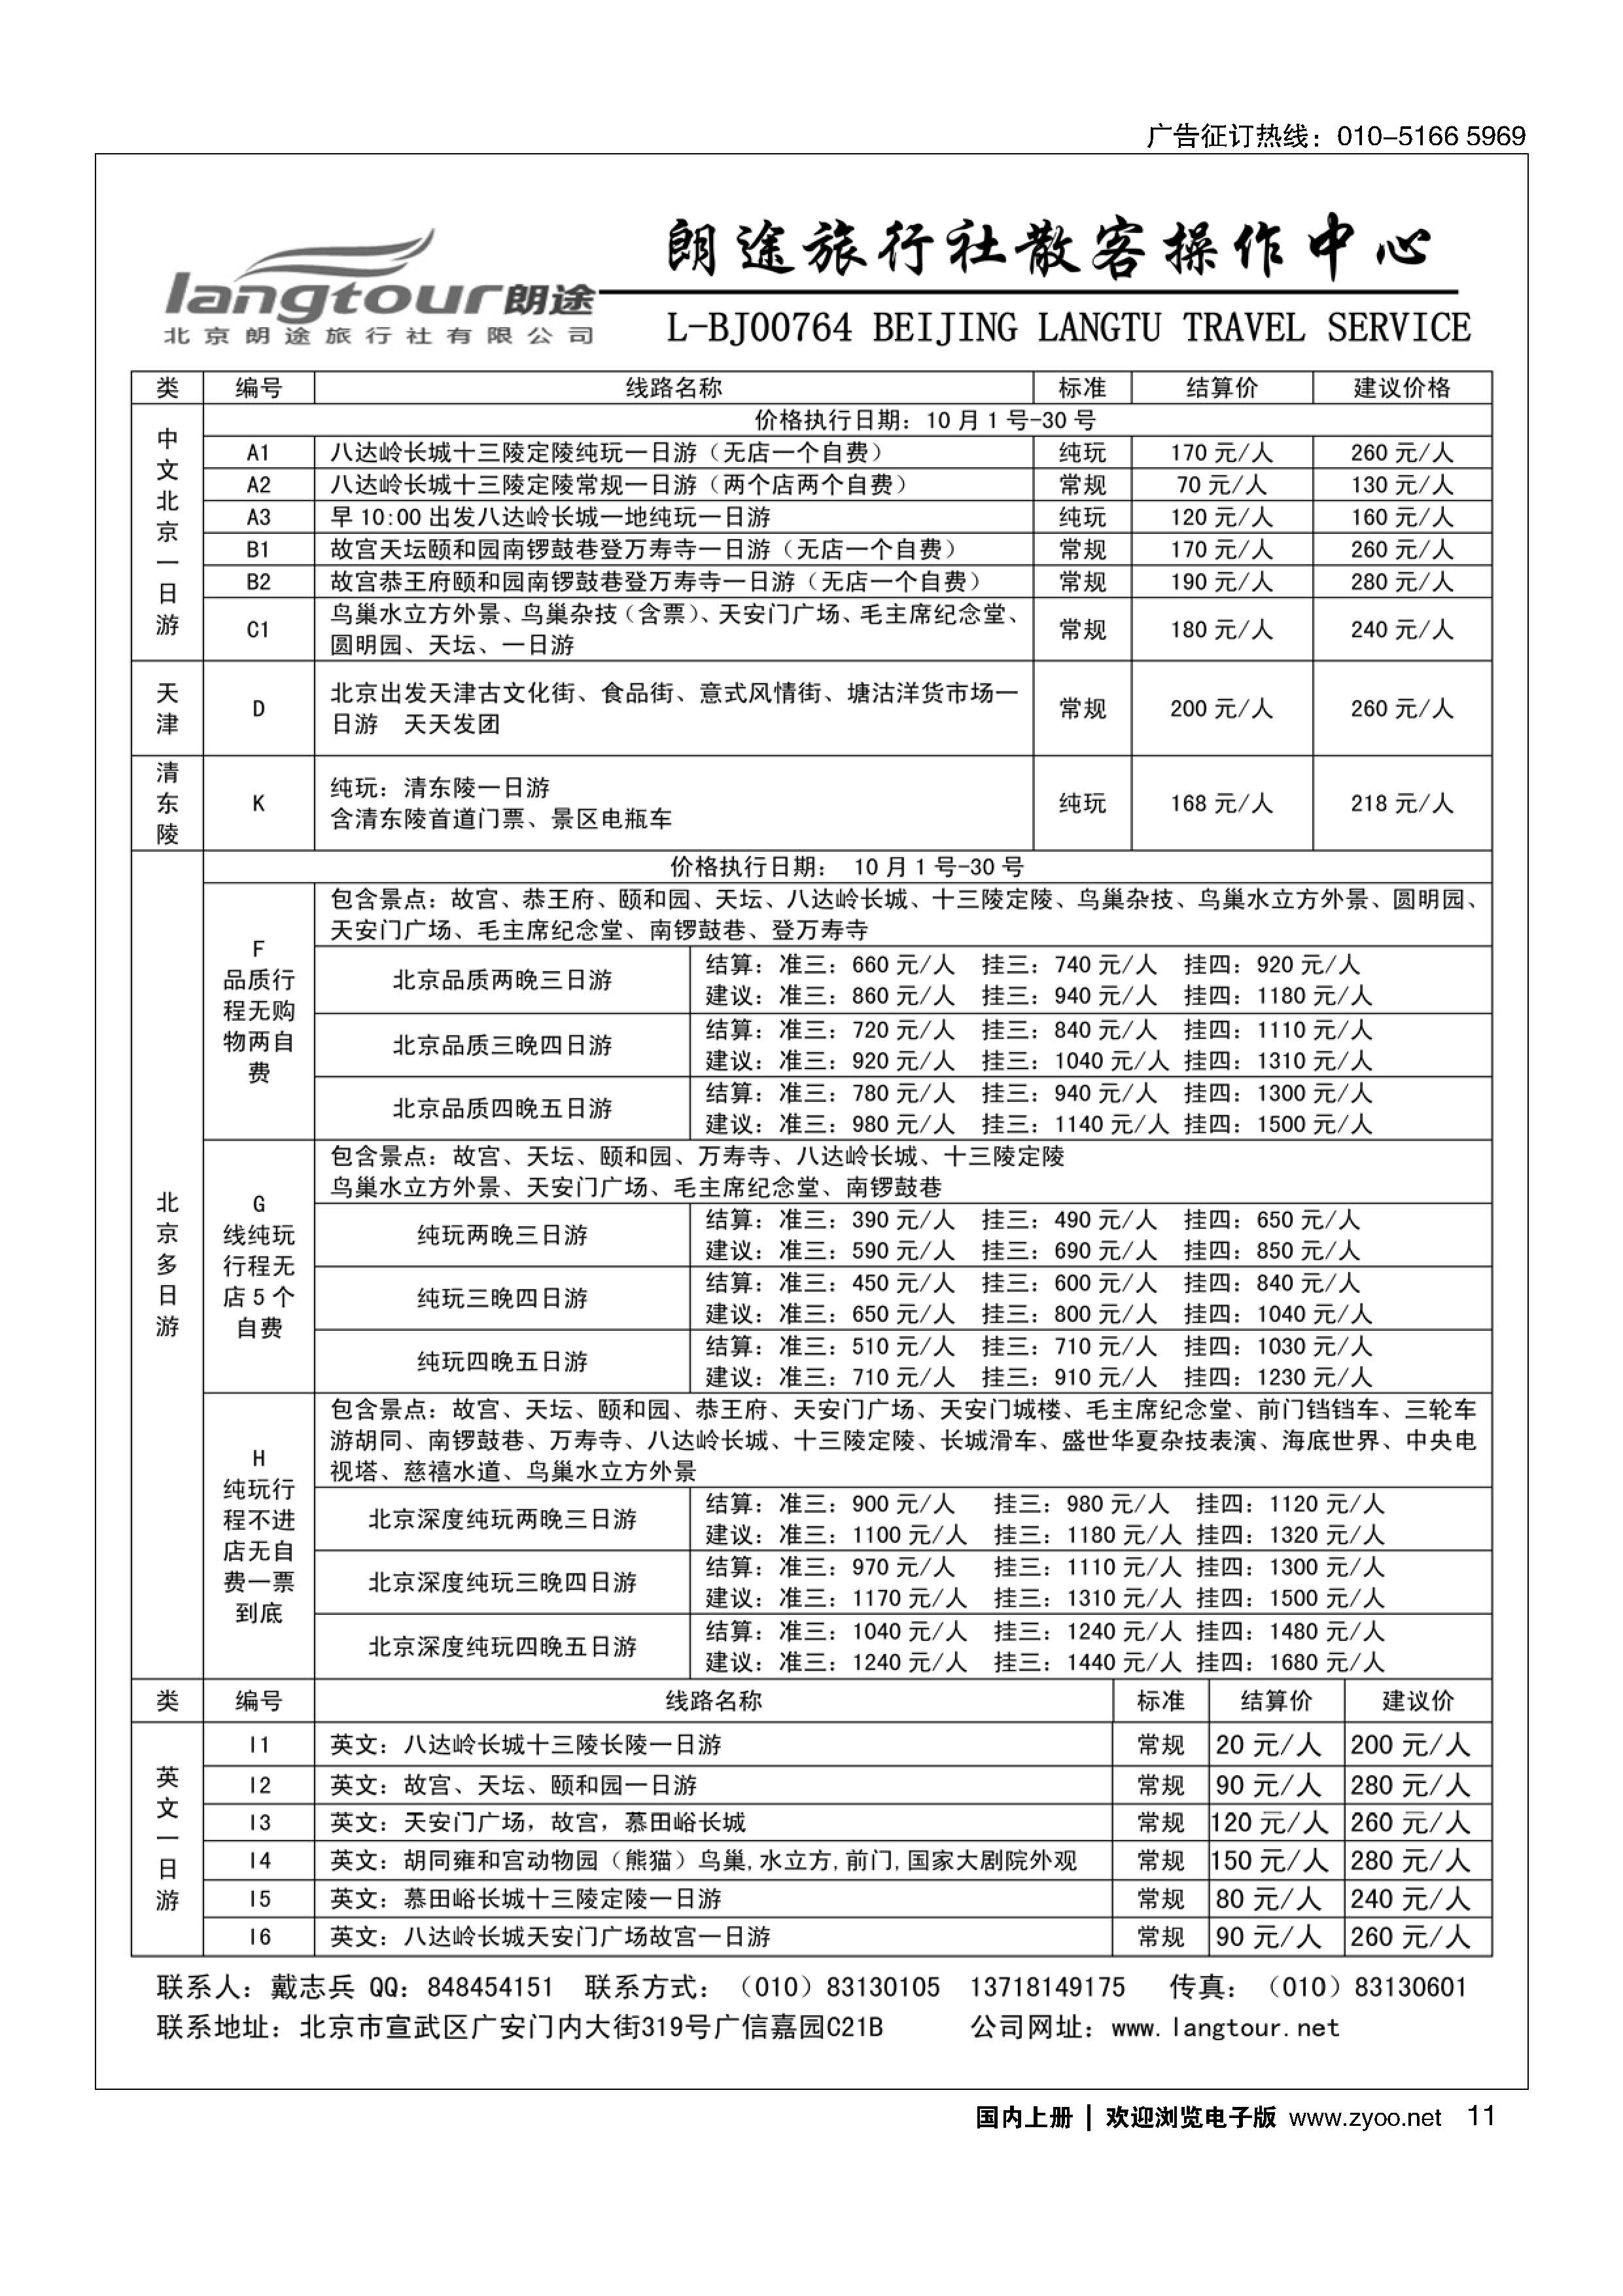 11北京朗途旅行社